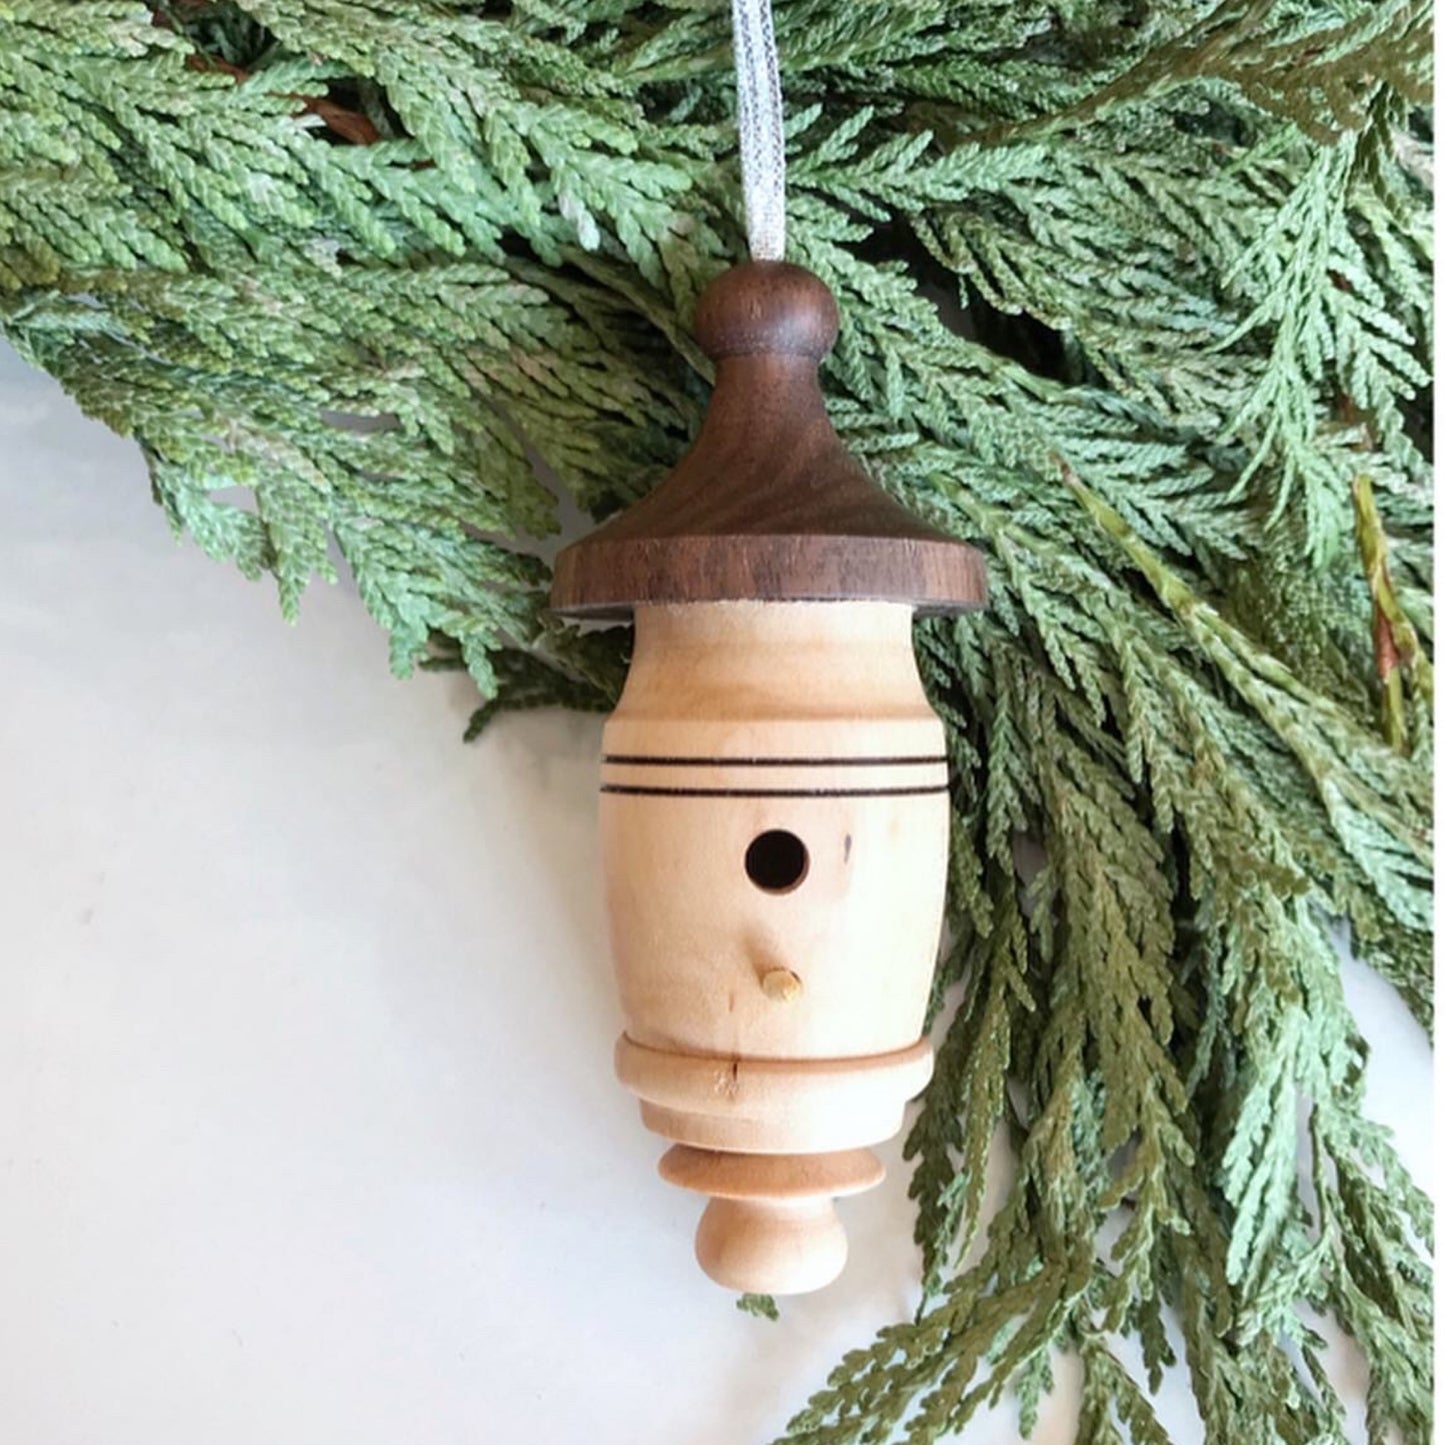 Wooden Heirloom Ornament, Birdhouse / Fairy House